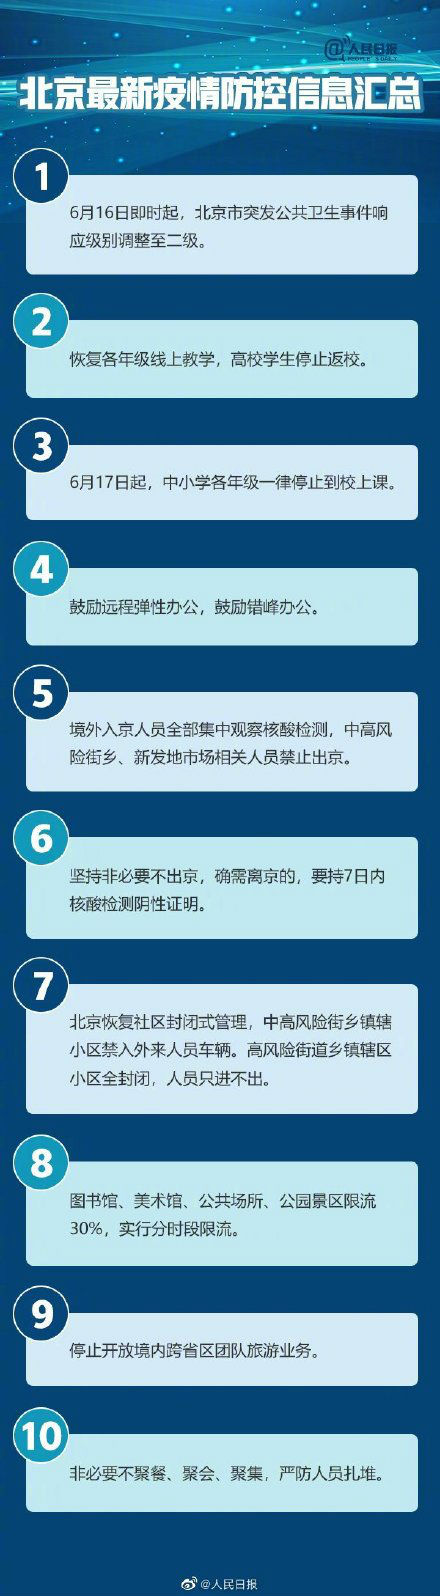 北京哪些地区列为中高风险 北京疫情防控最新消息一览